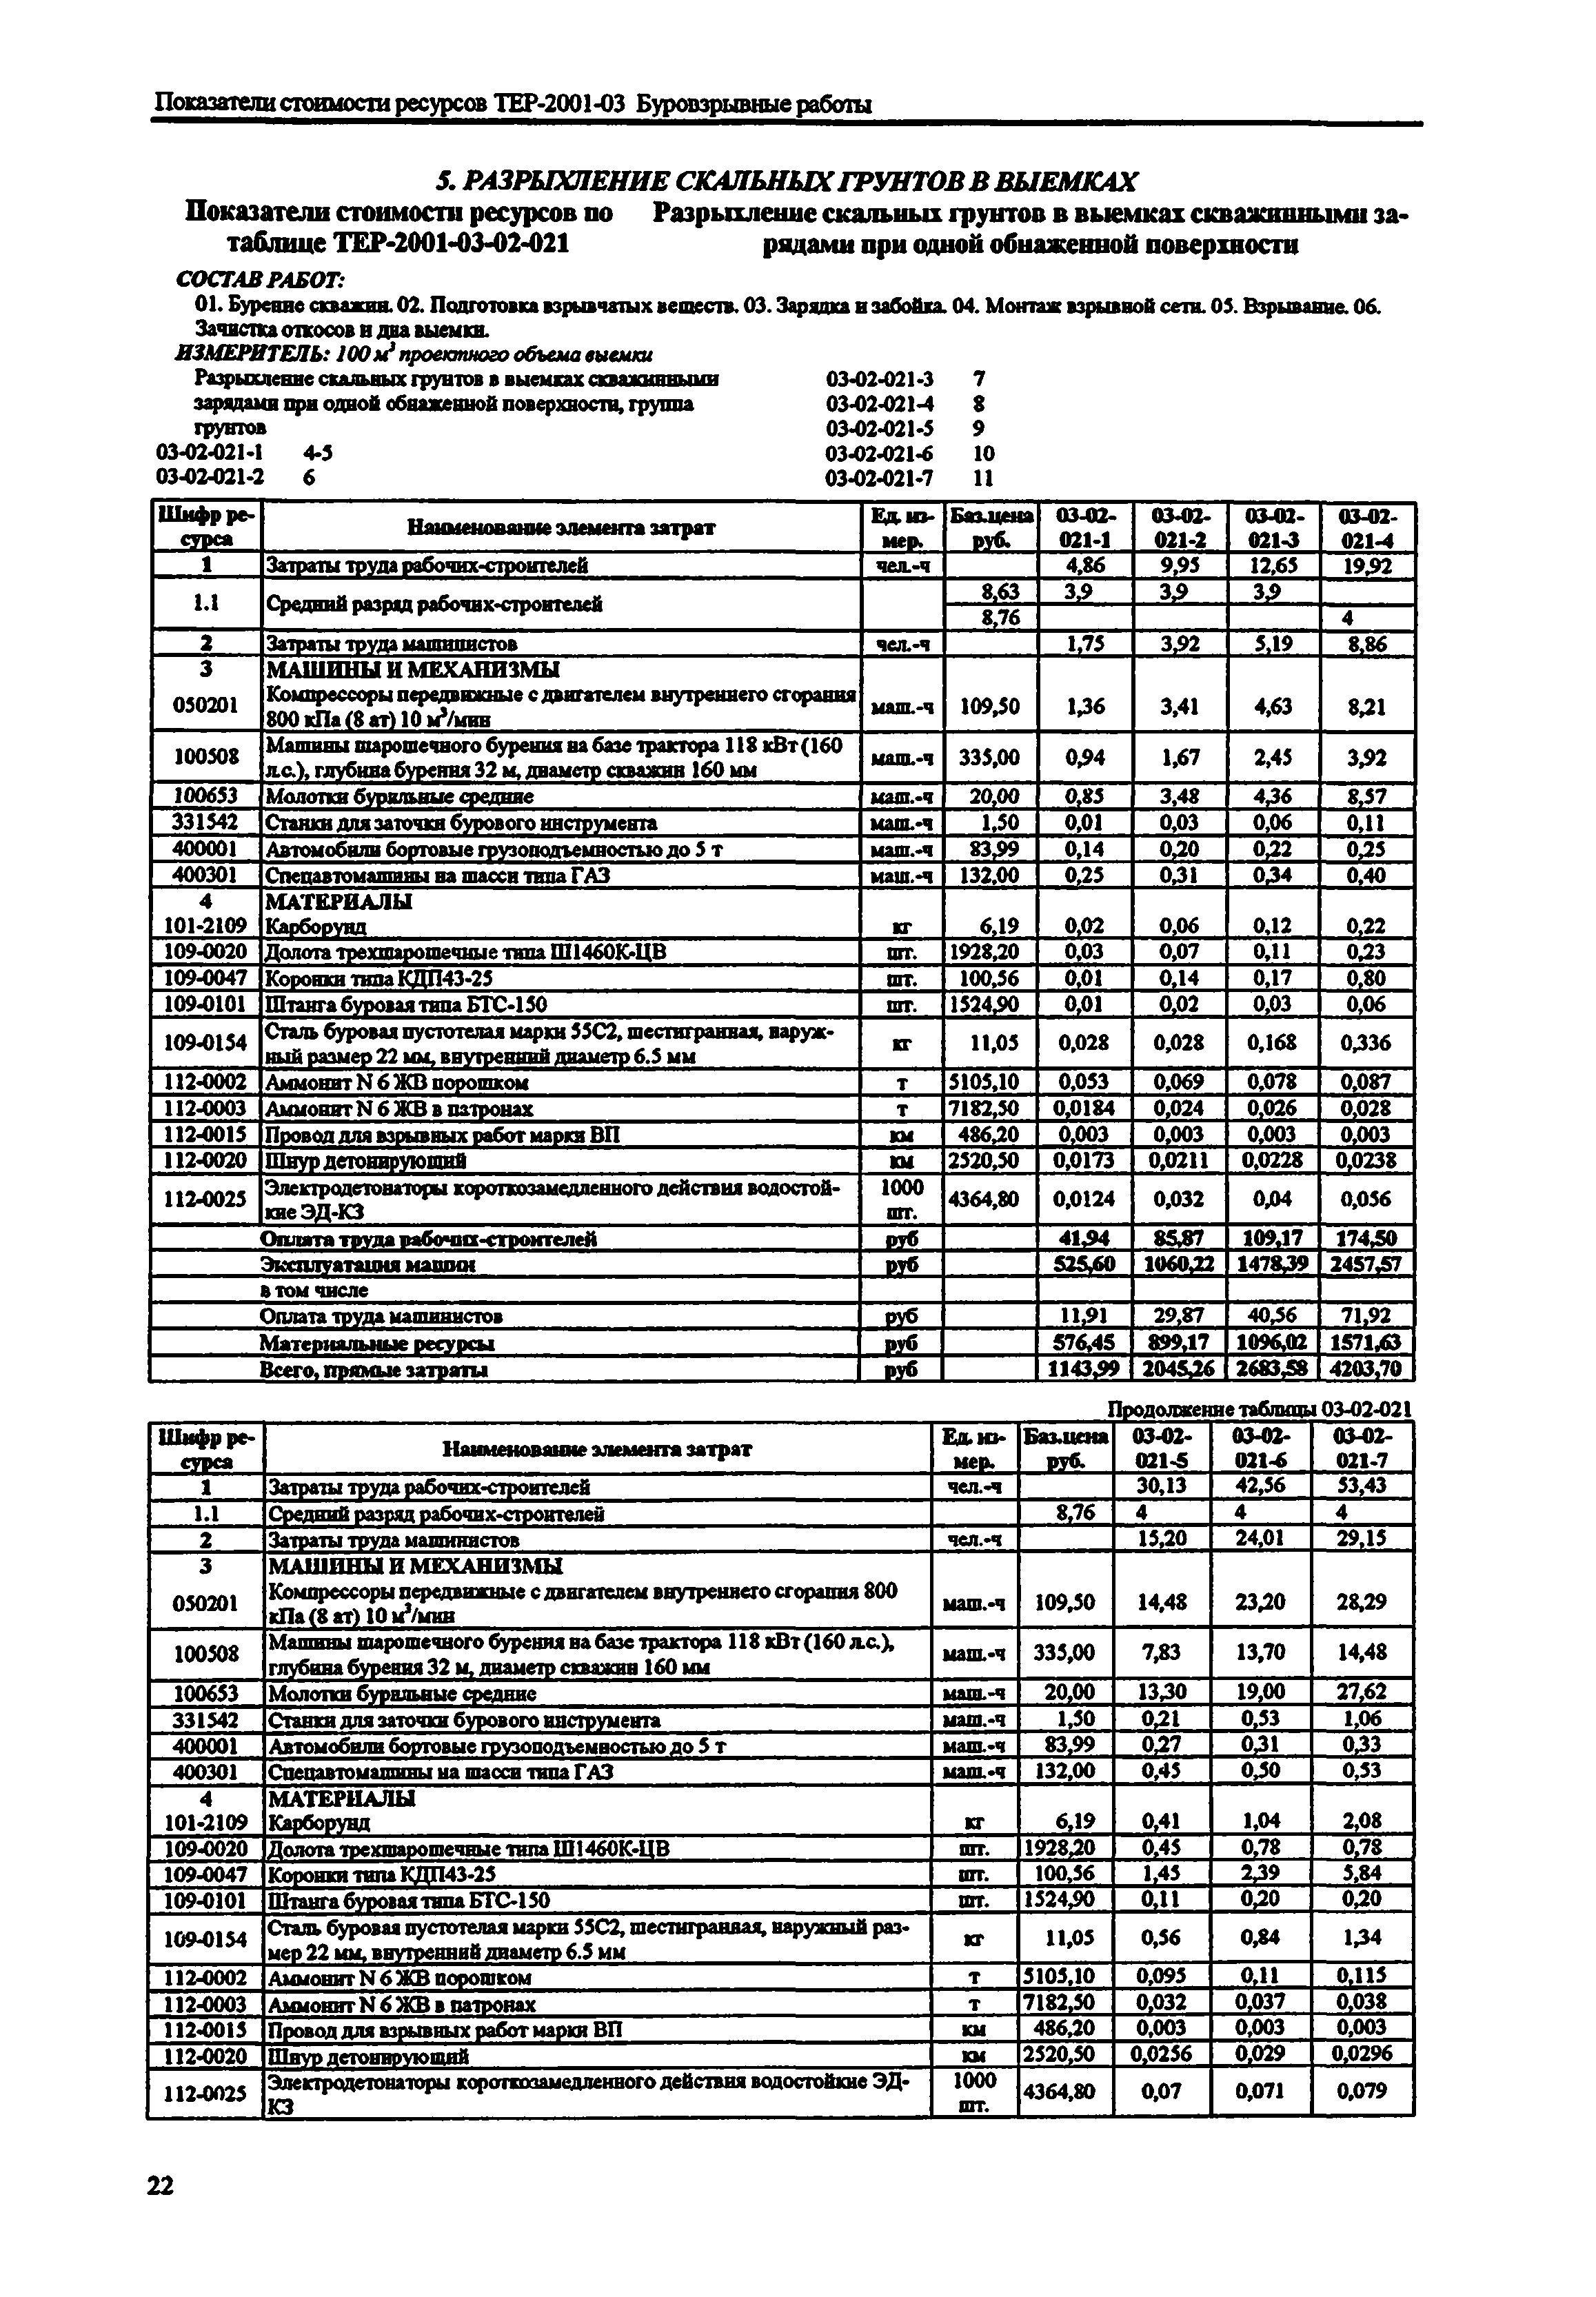 Справочное пособие к ТЕР 81-02-03-2001